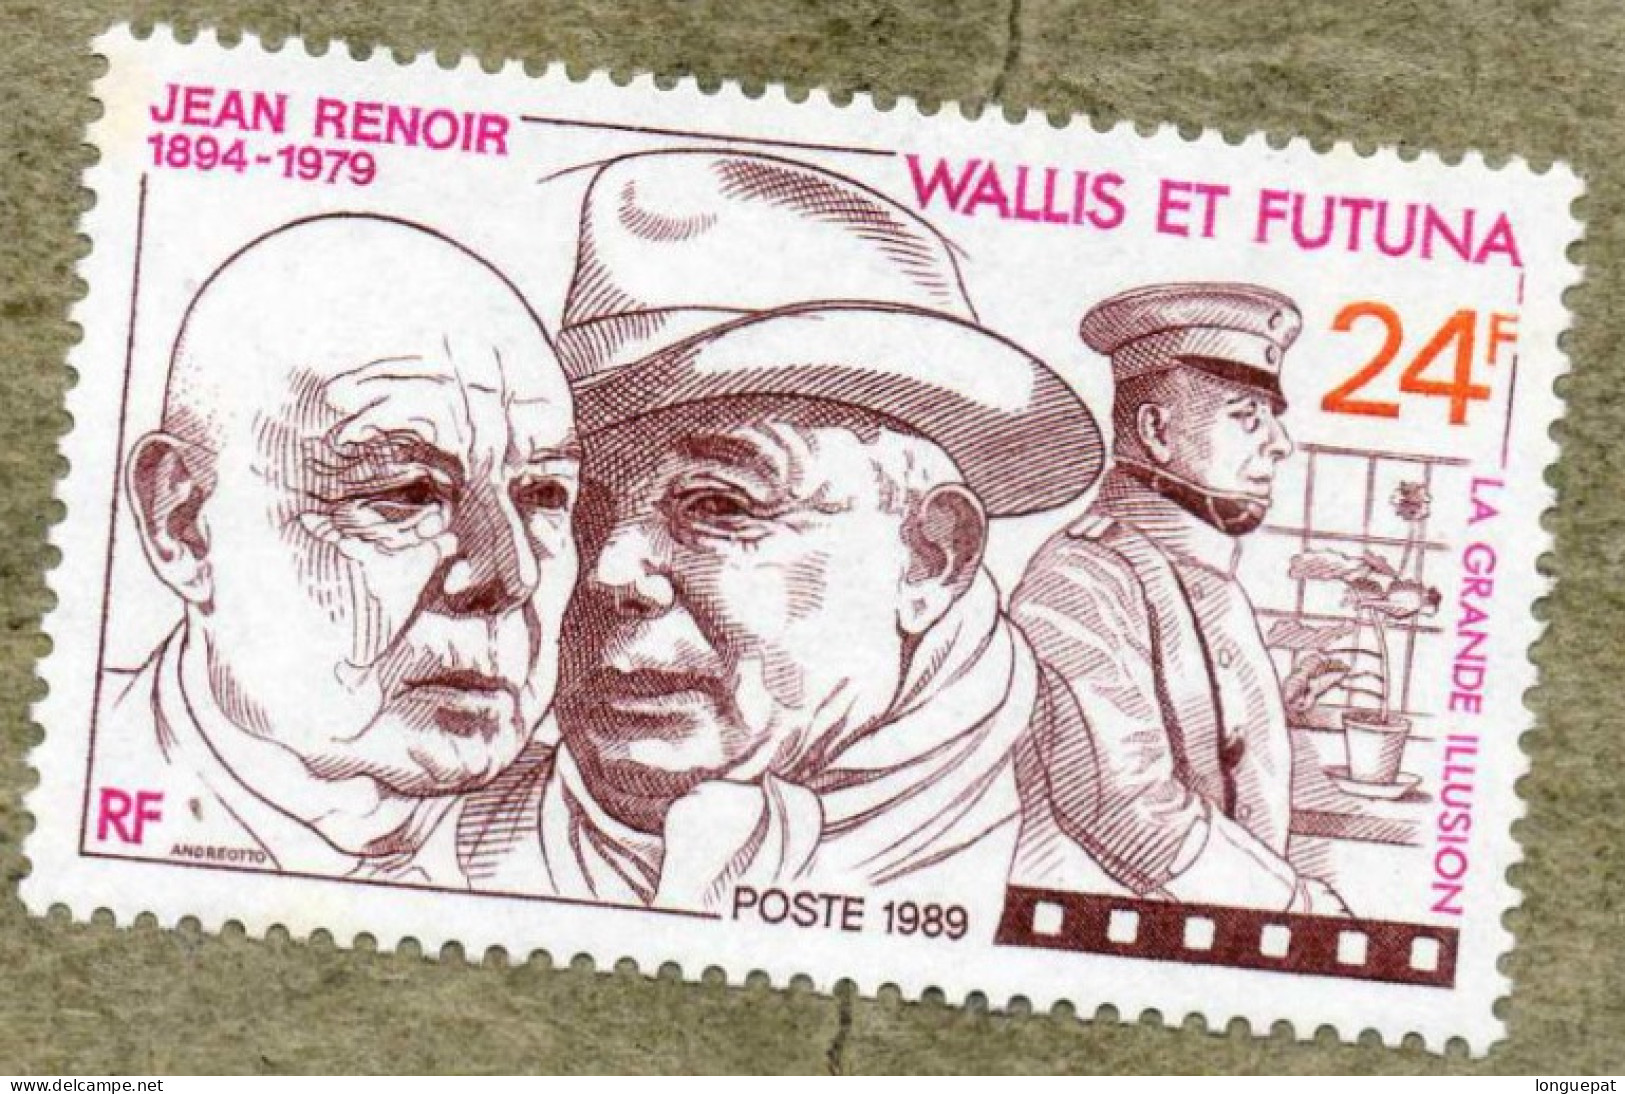 WALLIS Et FUTUNA  : Cinéma :Jean RENOIR, Cinéaste Français- Portraits De Renoir Et Eric Von Stroheim - 10 Ans De Sa Mort - Neufs